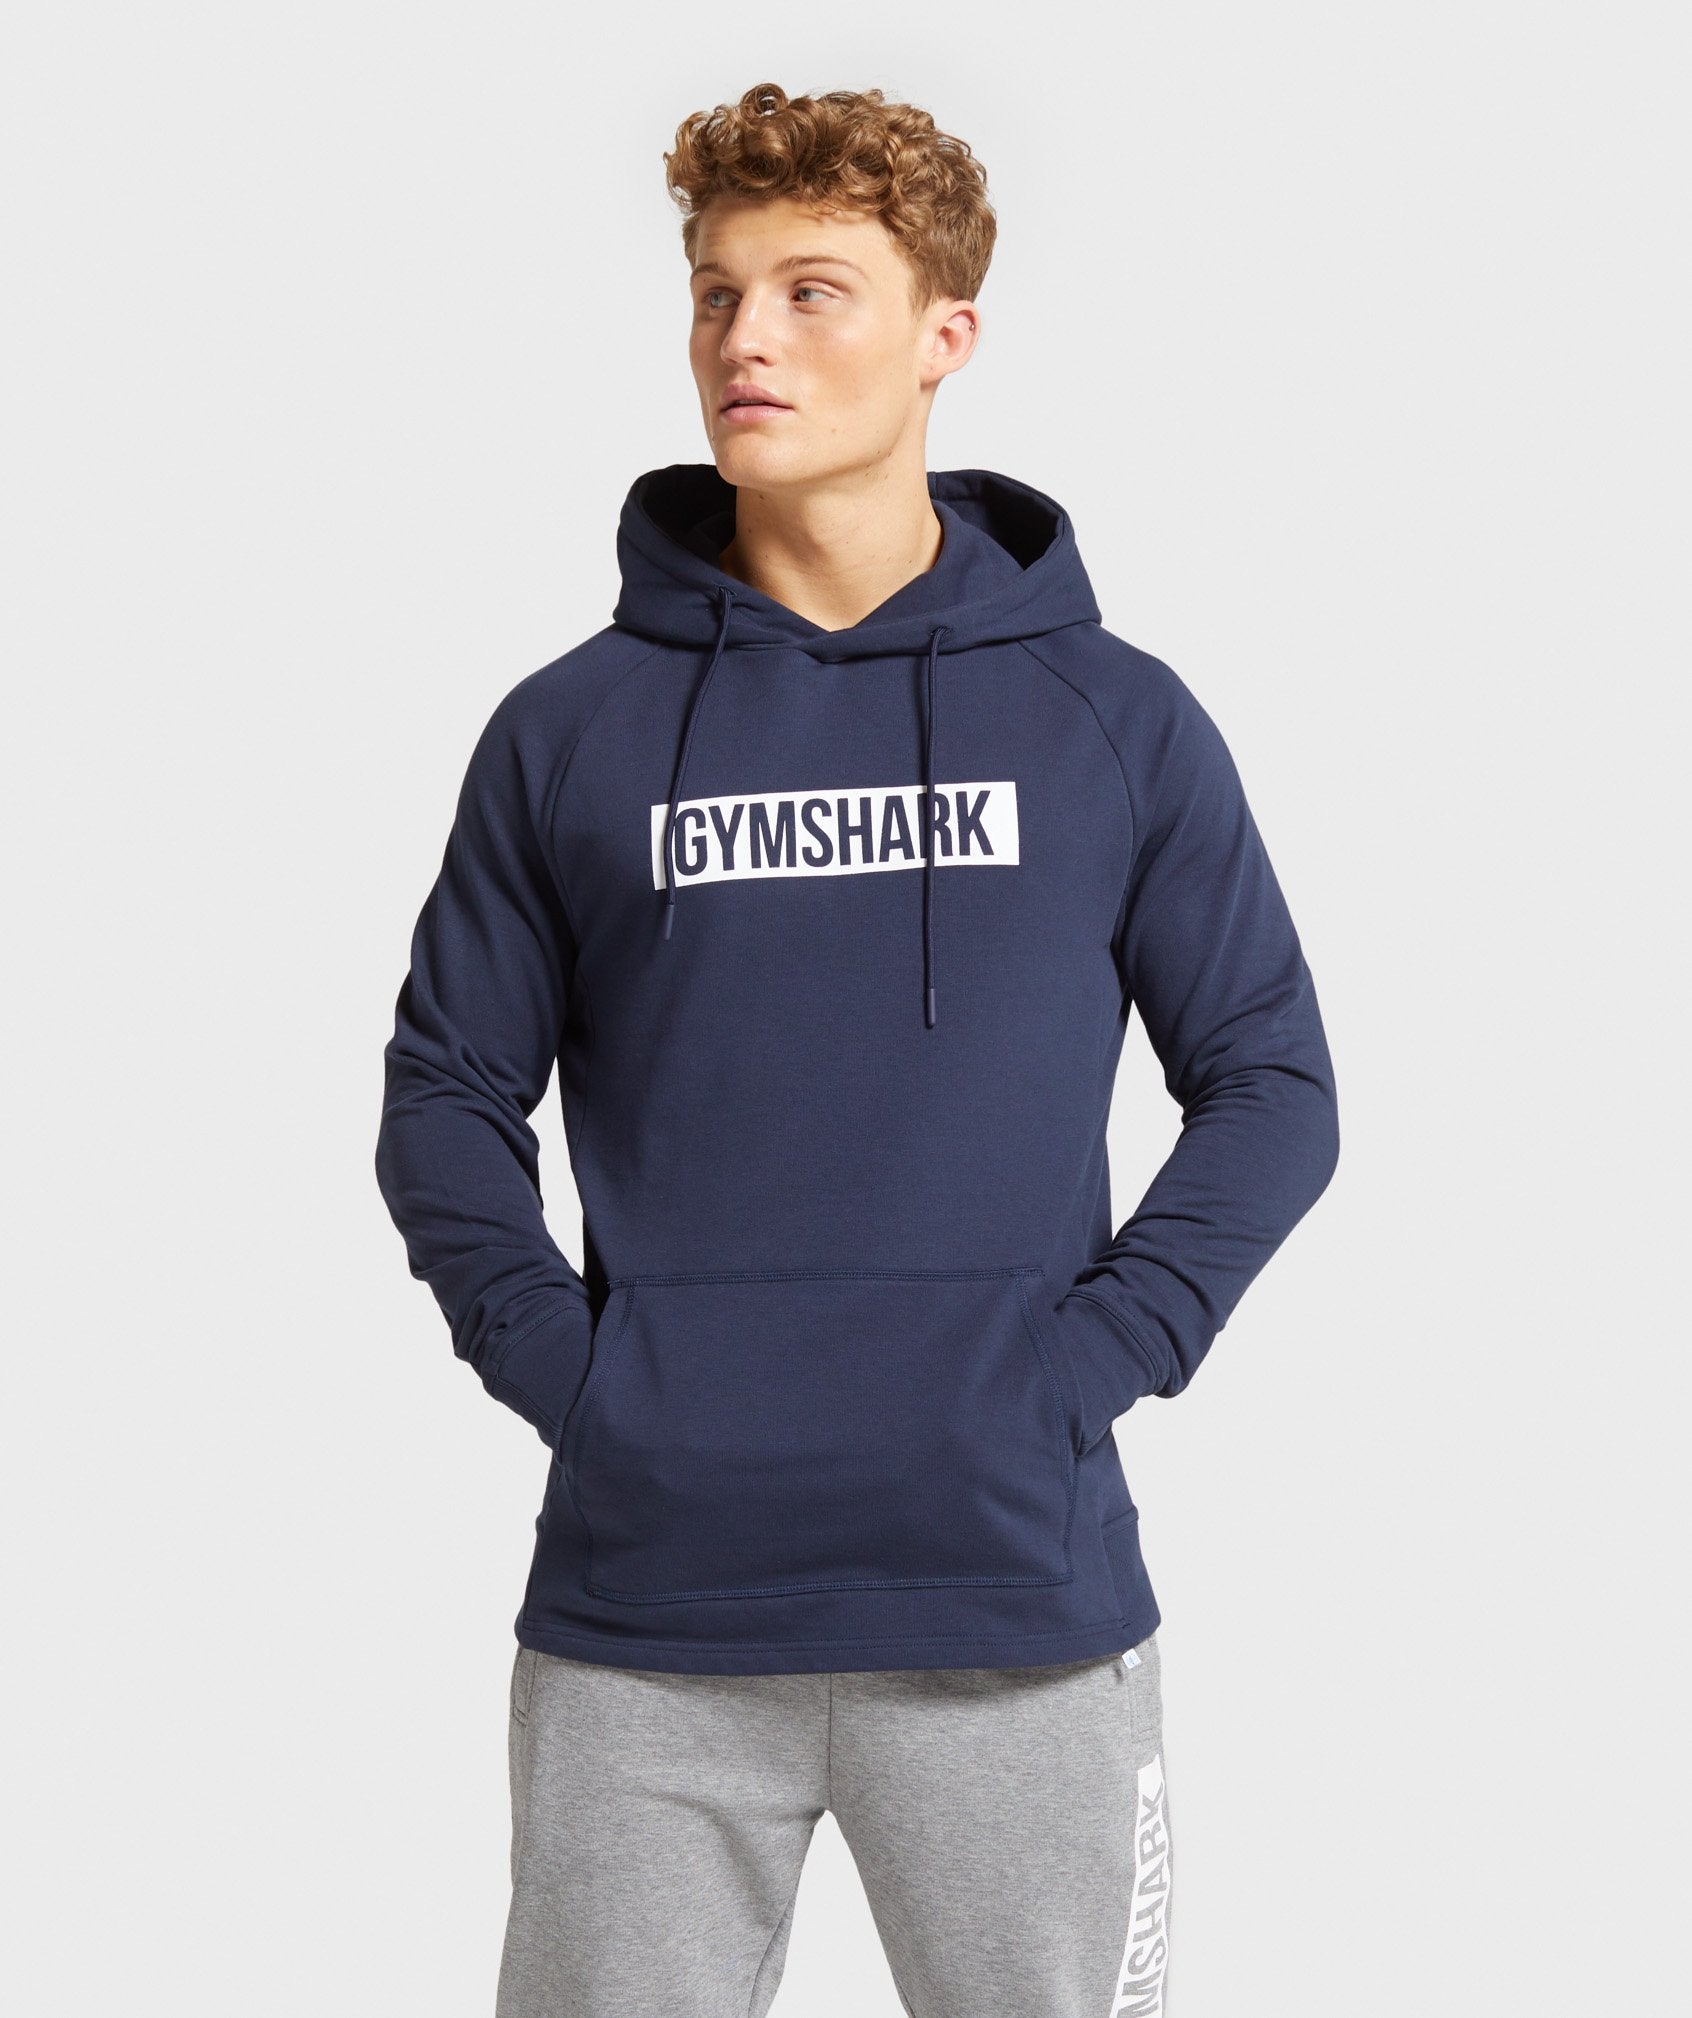 gymshark short sleeve hoodie